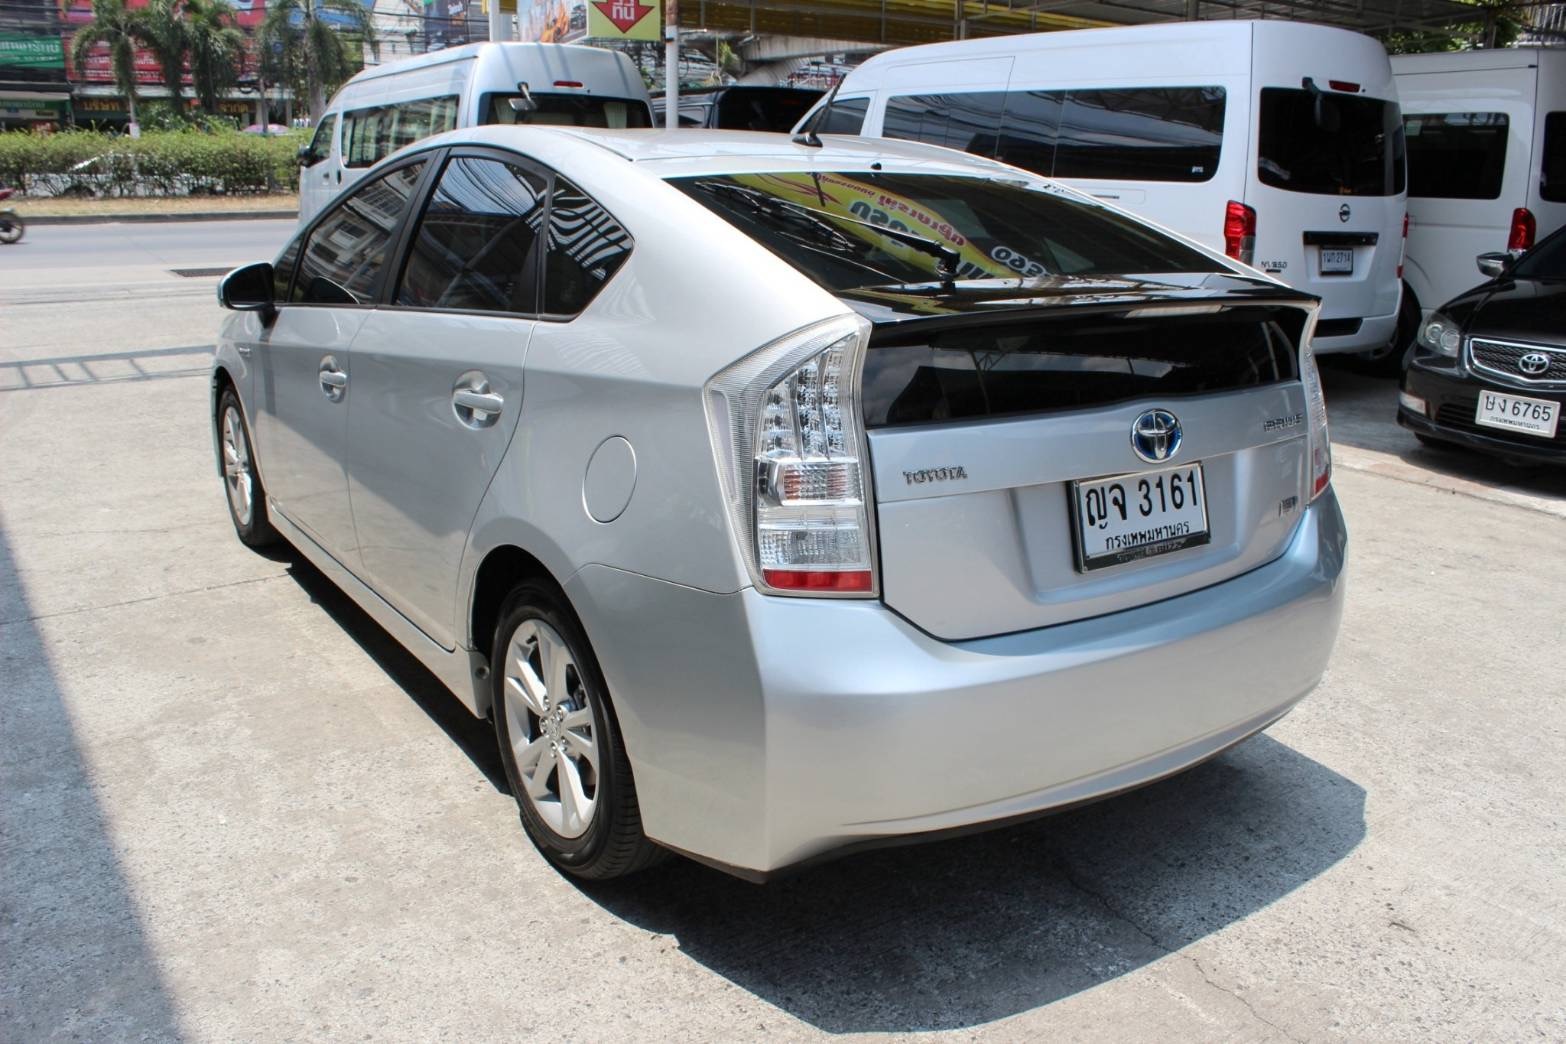 Toyota Prius ปี 2011 สีเงิน